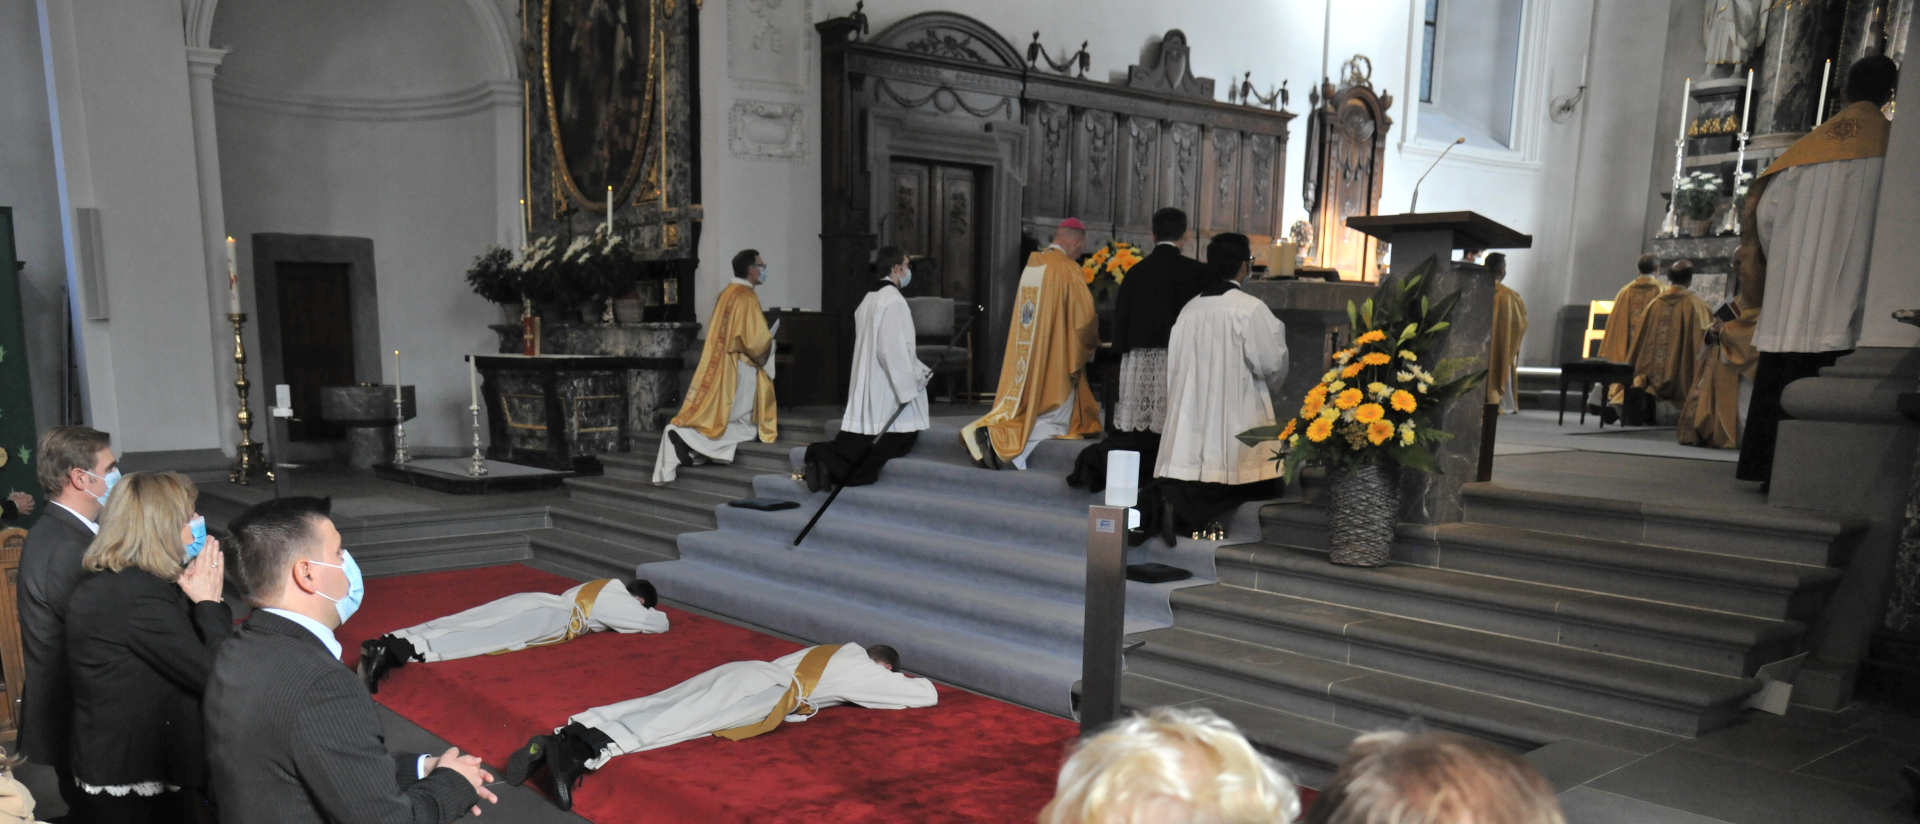 Die Diakone liegen auf dem Boden und warten auf die Priesterweihe.